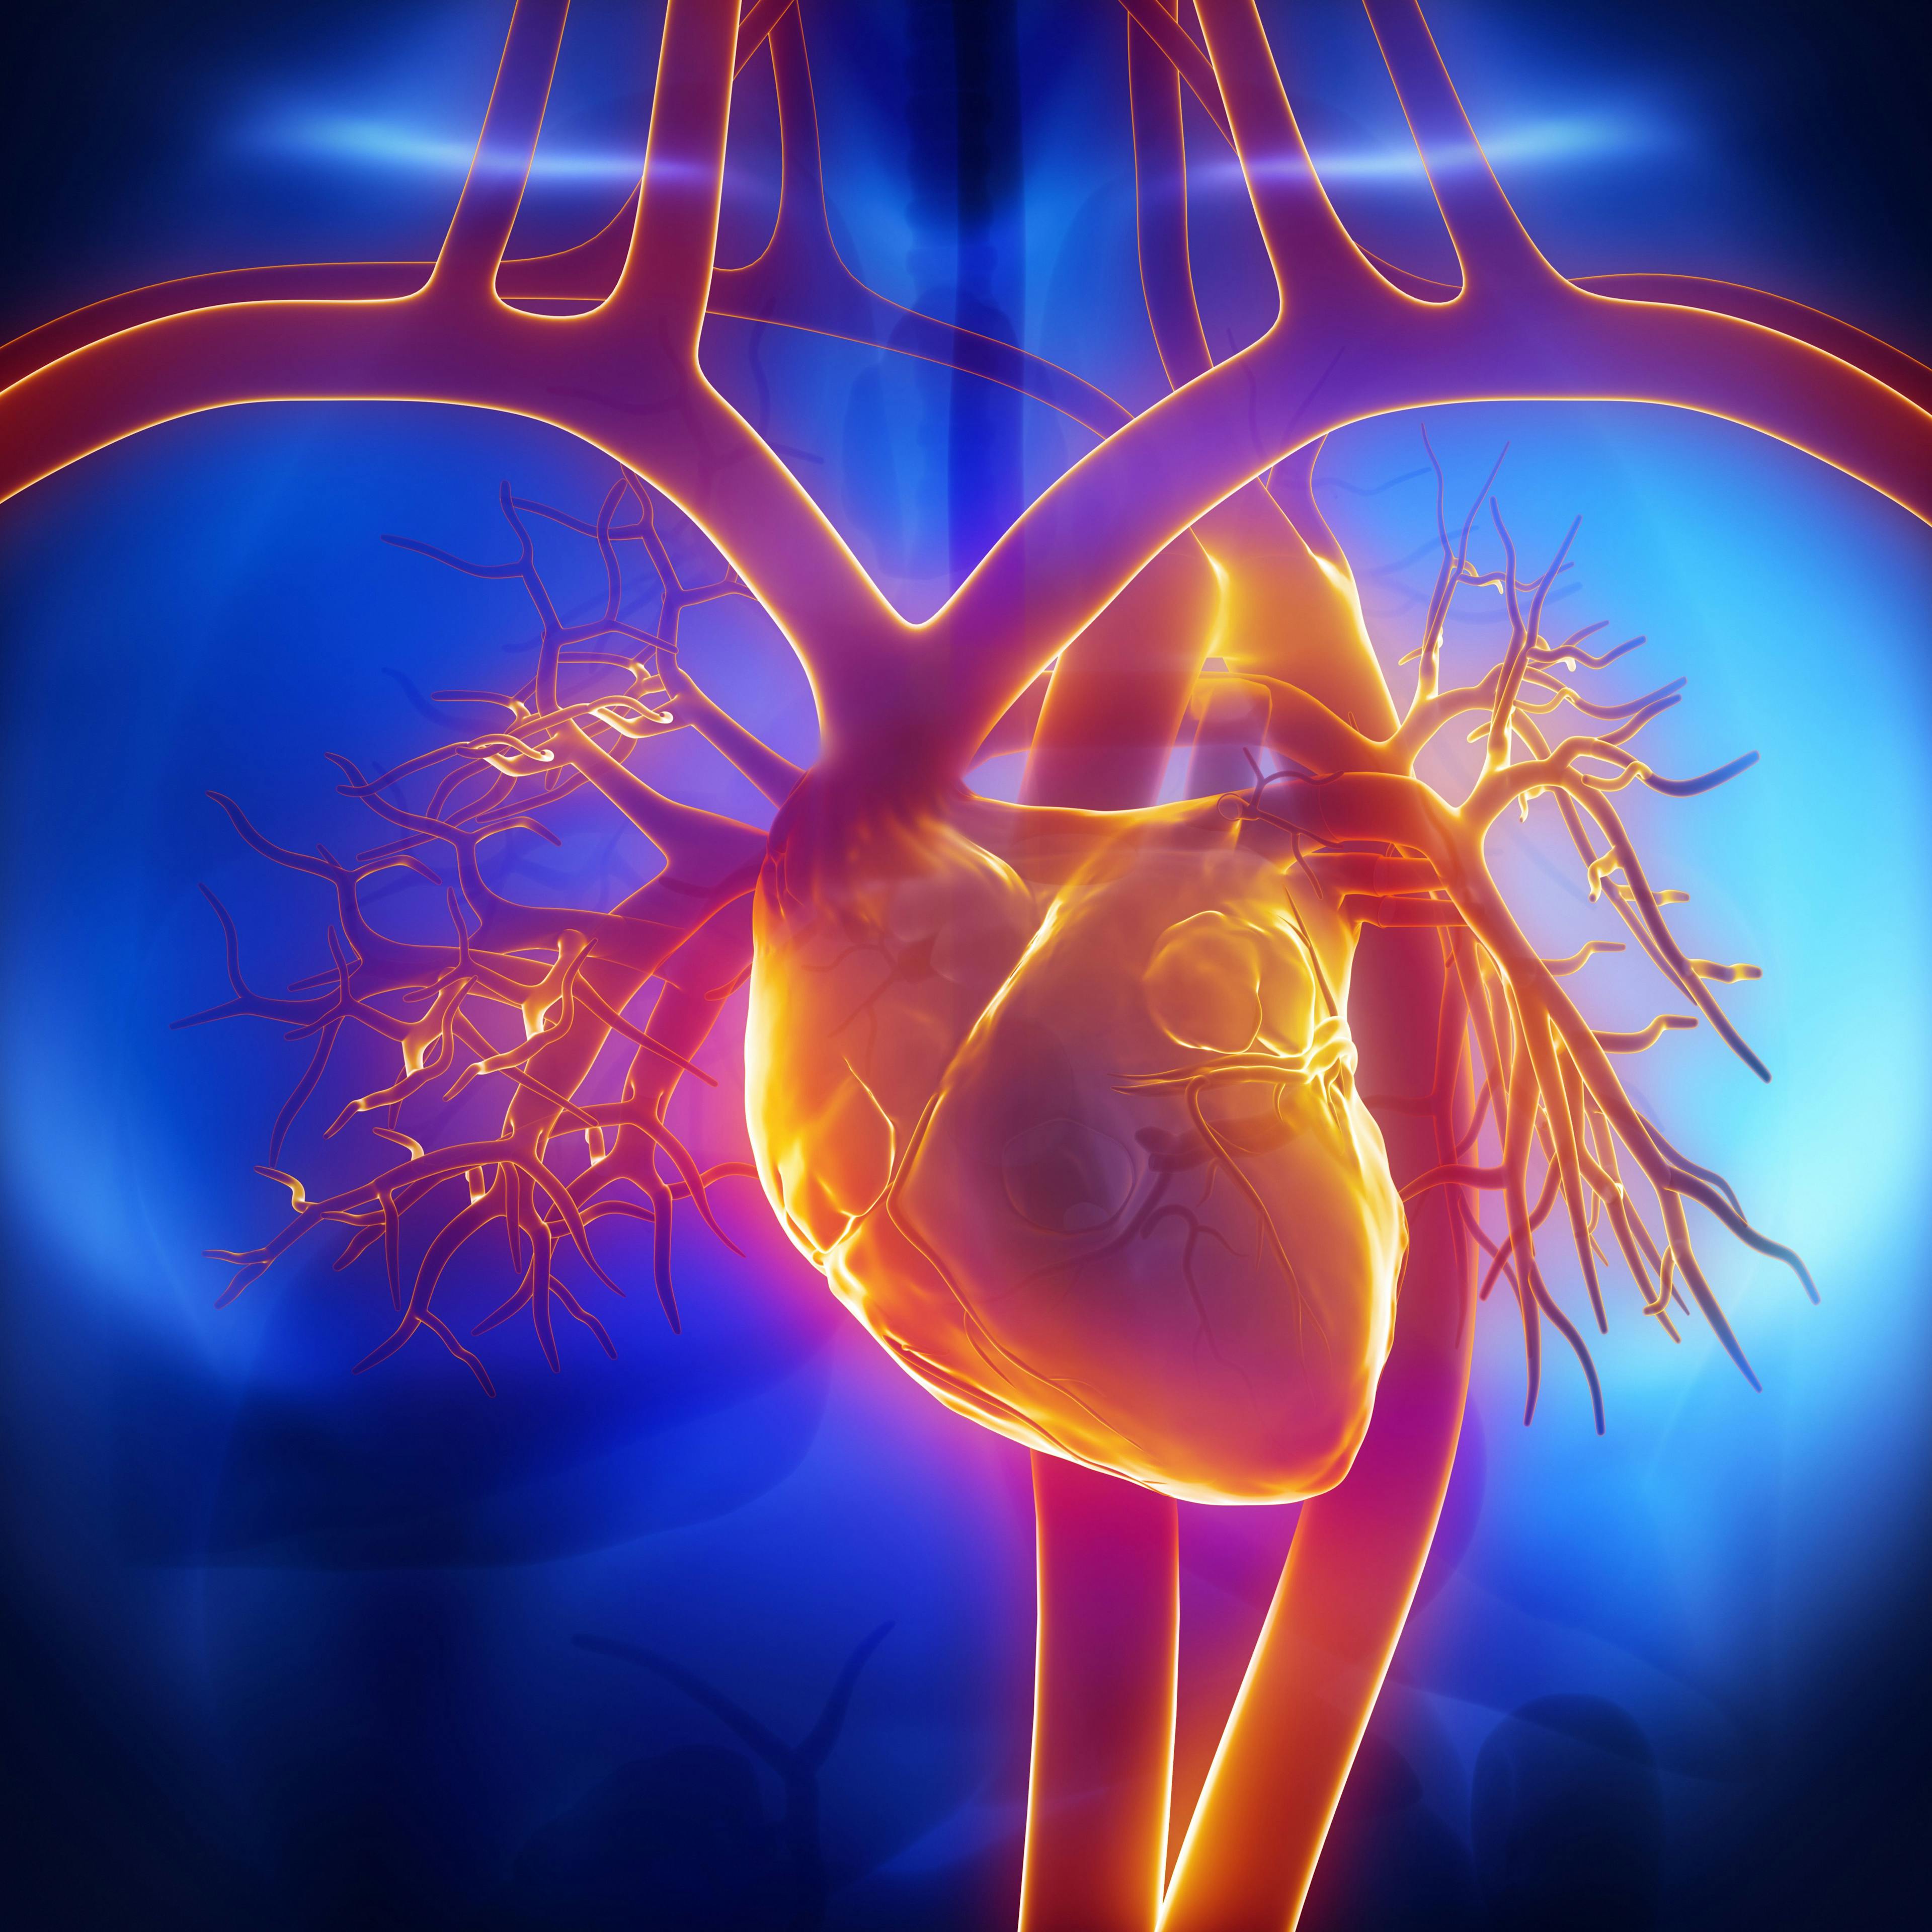 Heart, veins, and arteries | Image credit: CLIPAREA.com - stock.adobe.com